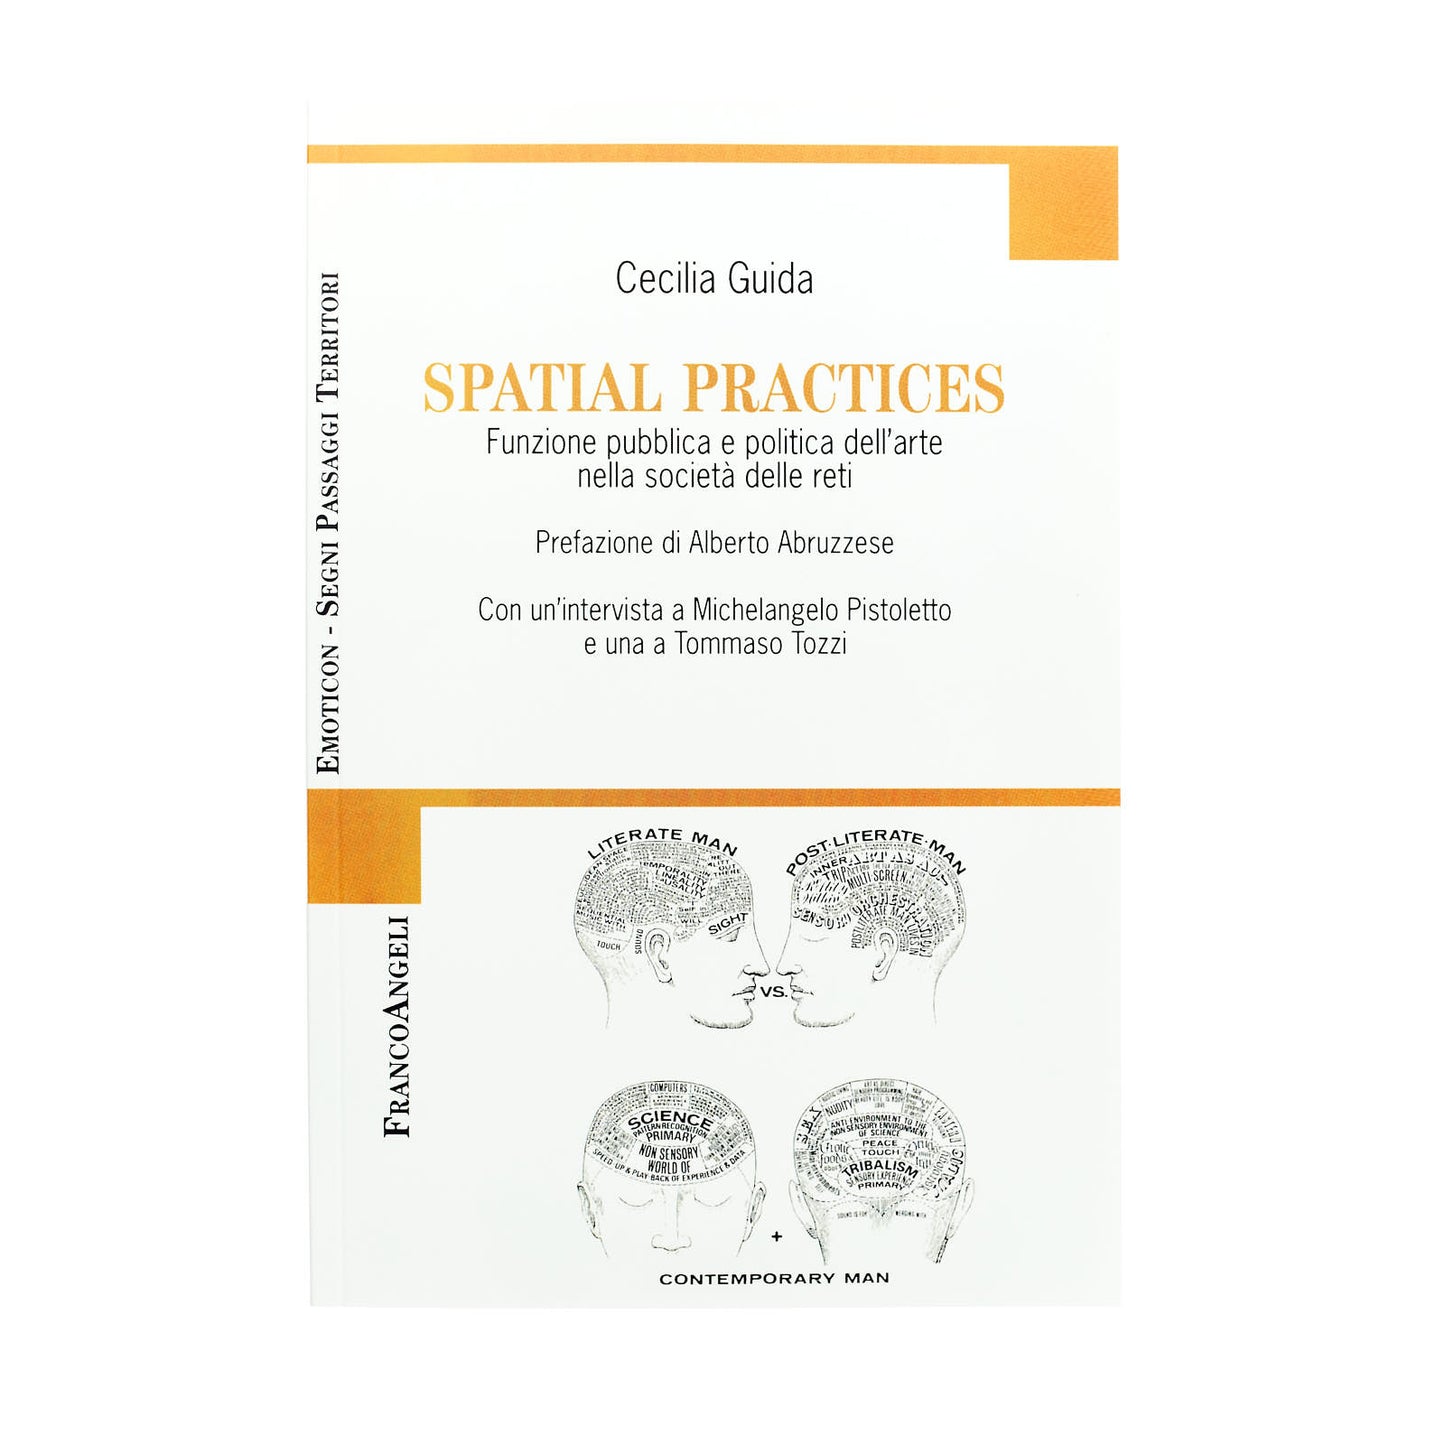 Spacial Practices (Cecilia Guida)